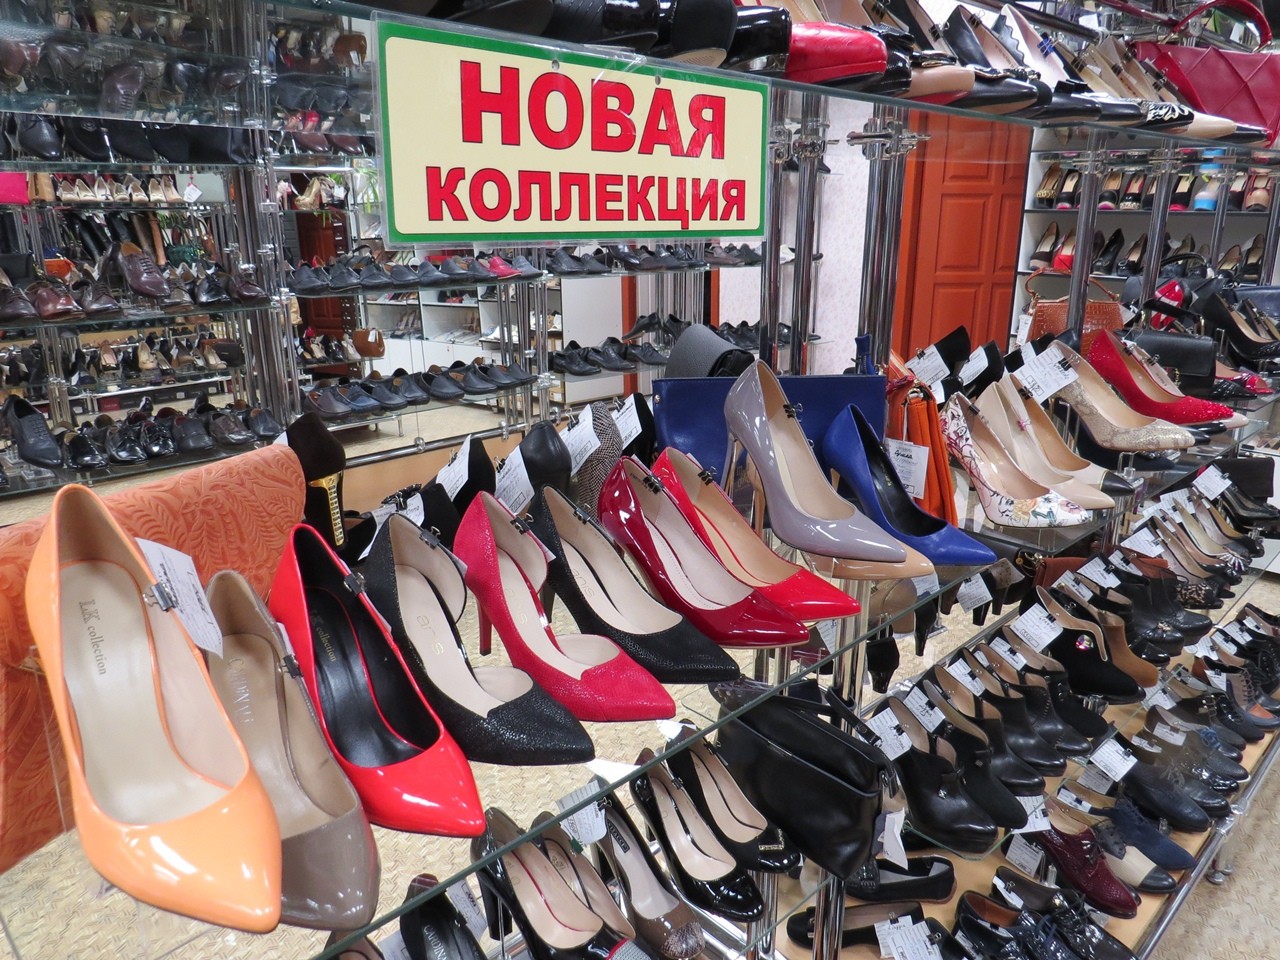 Оренбург дом обуви на алтайской